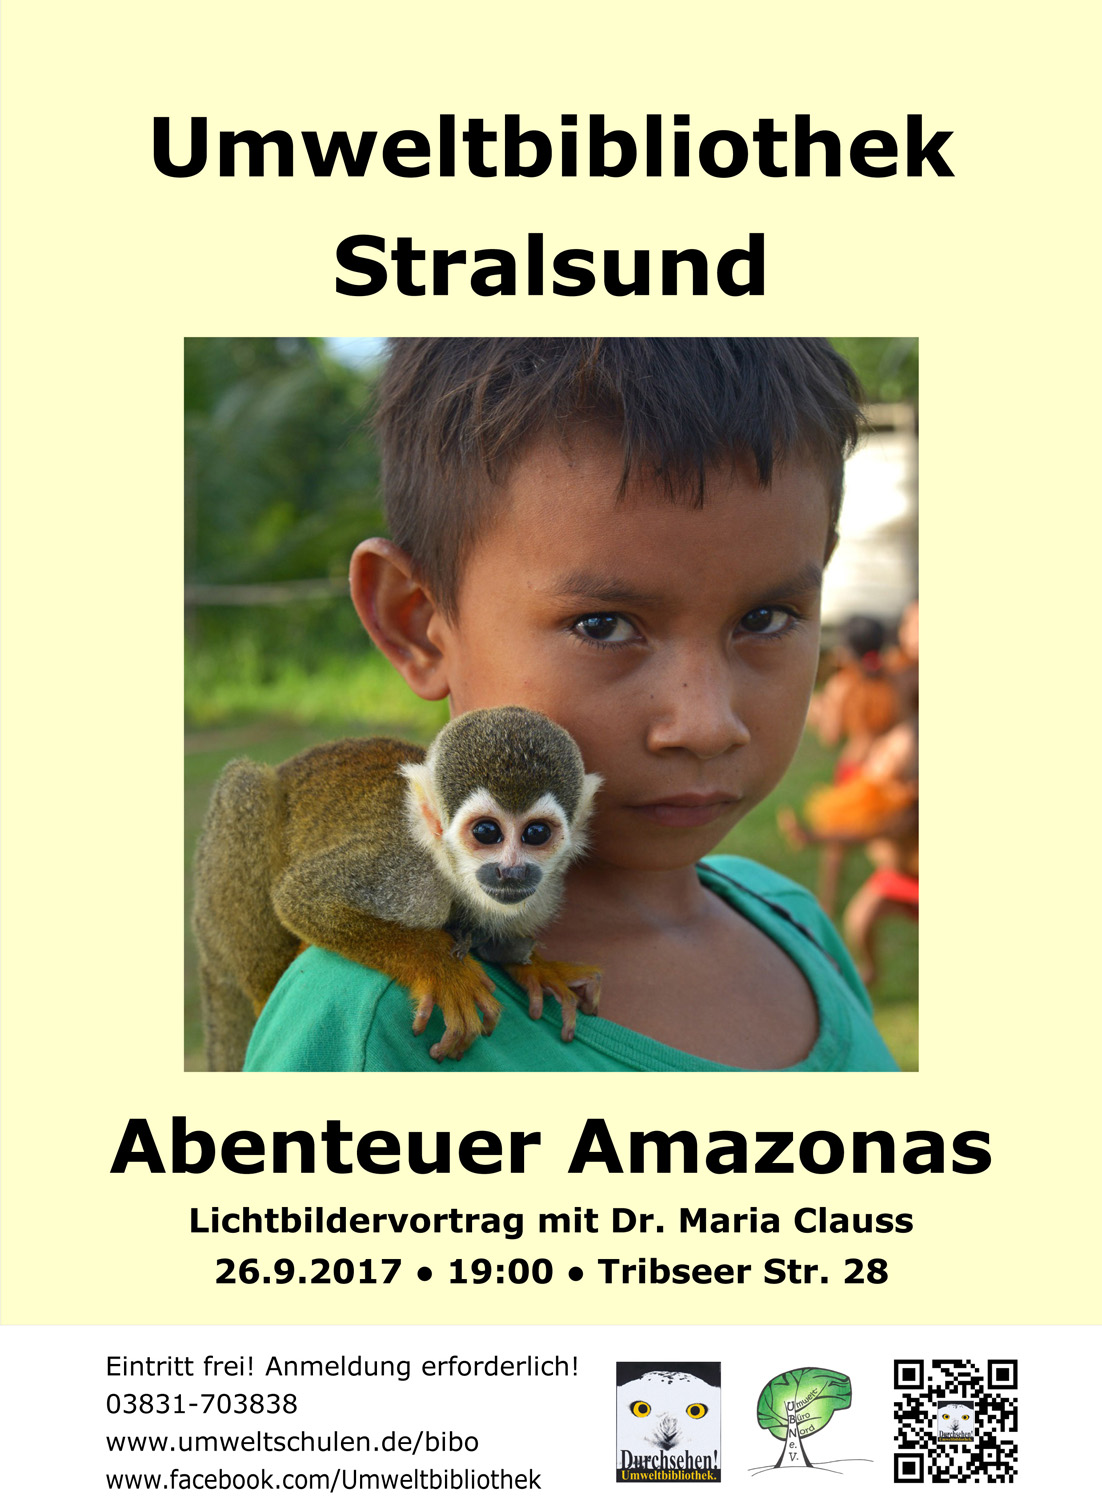 Das Bild zeigt das Plakat zur Veranstaltung Abenteuer Amazonas. Es enthält neben den Veranstaltungsinformationen ein Foto, das einen Jungen mit einem kleinen Affen zeigt.